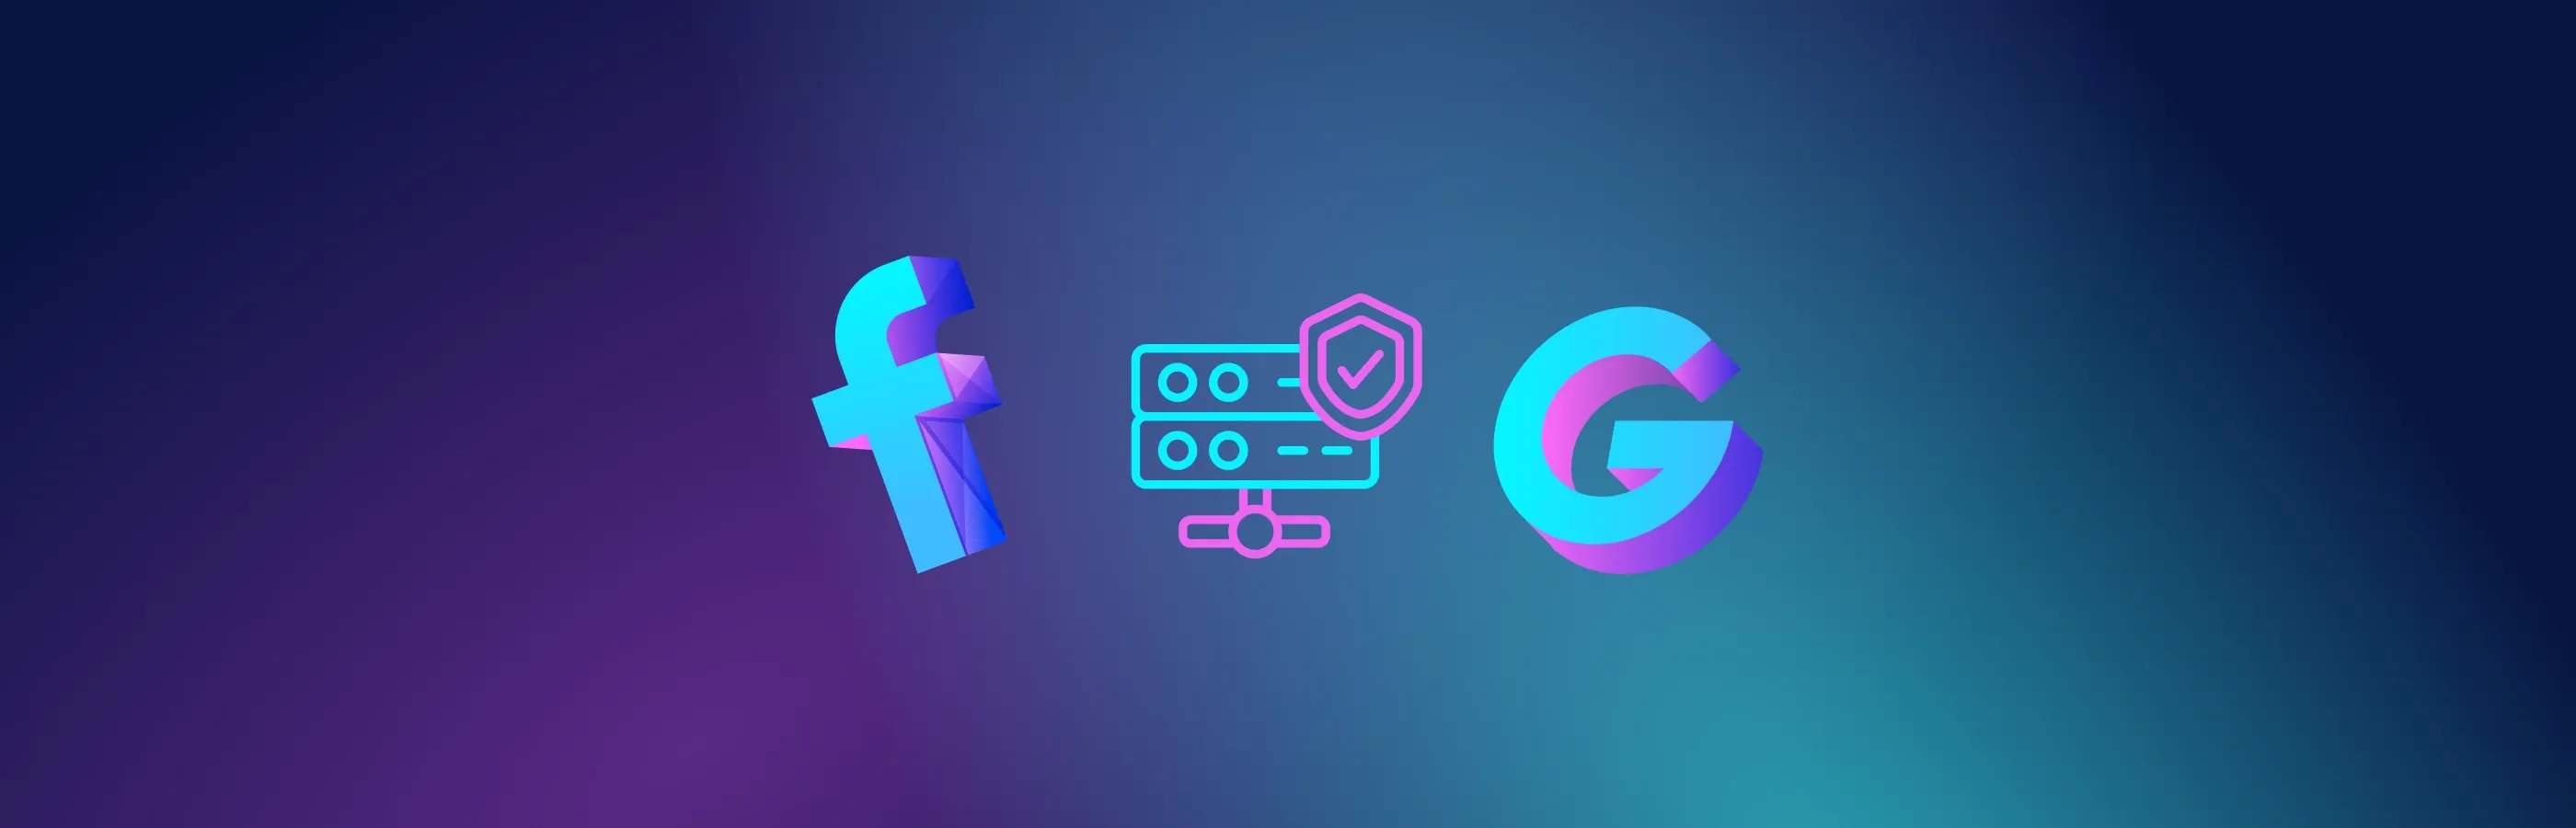 Cómo elegir buenos proxies para Facebook y Google: 6 consejos